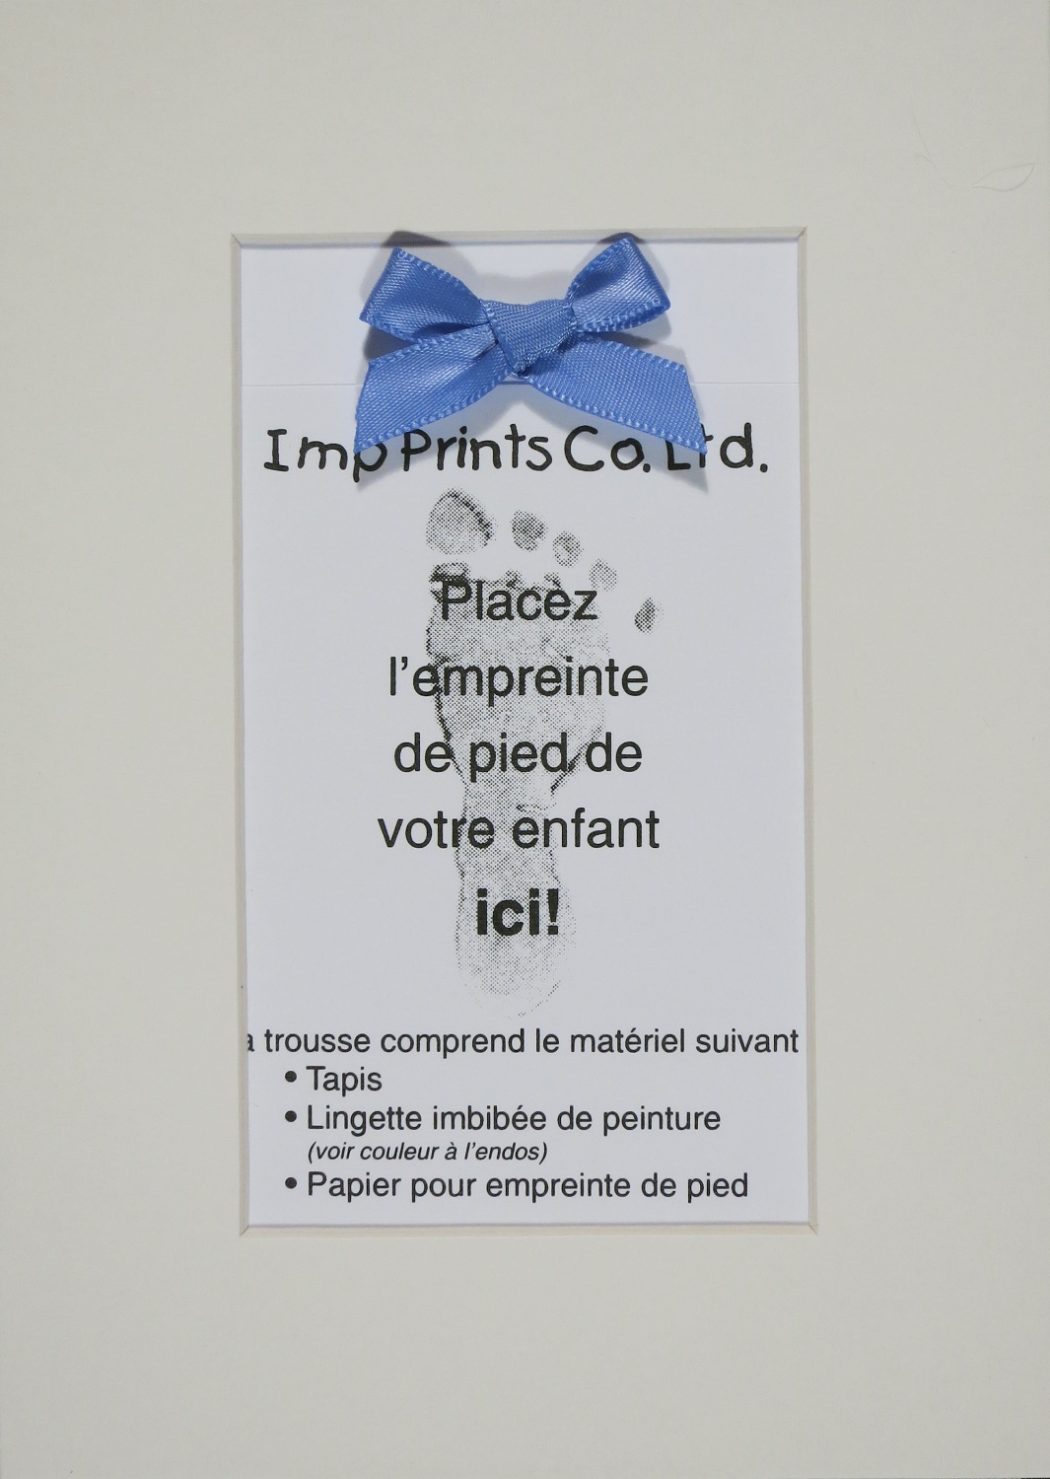 Kit de tapis, Empreinte de pied, Bleue (inclut Lingette Imbibée de Peinture)